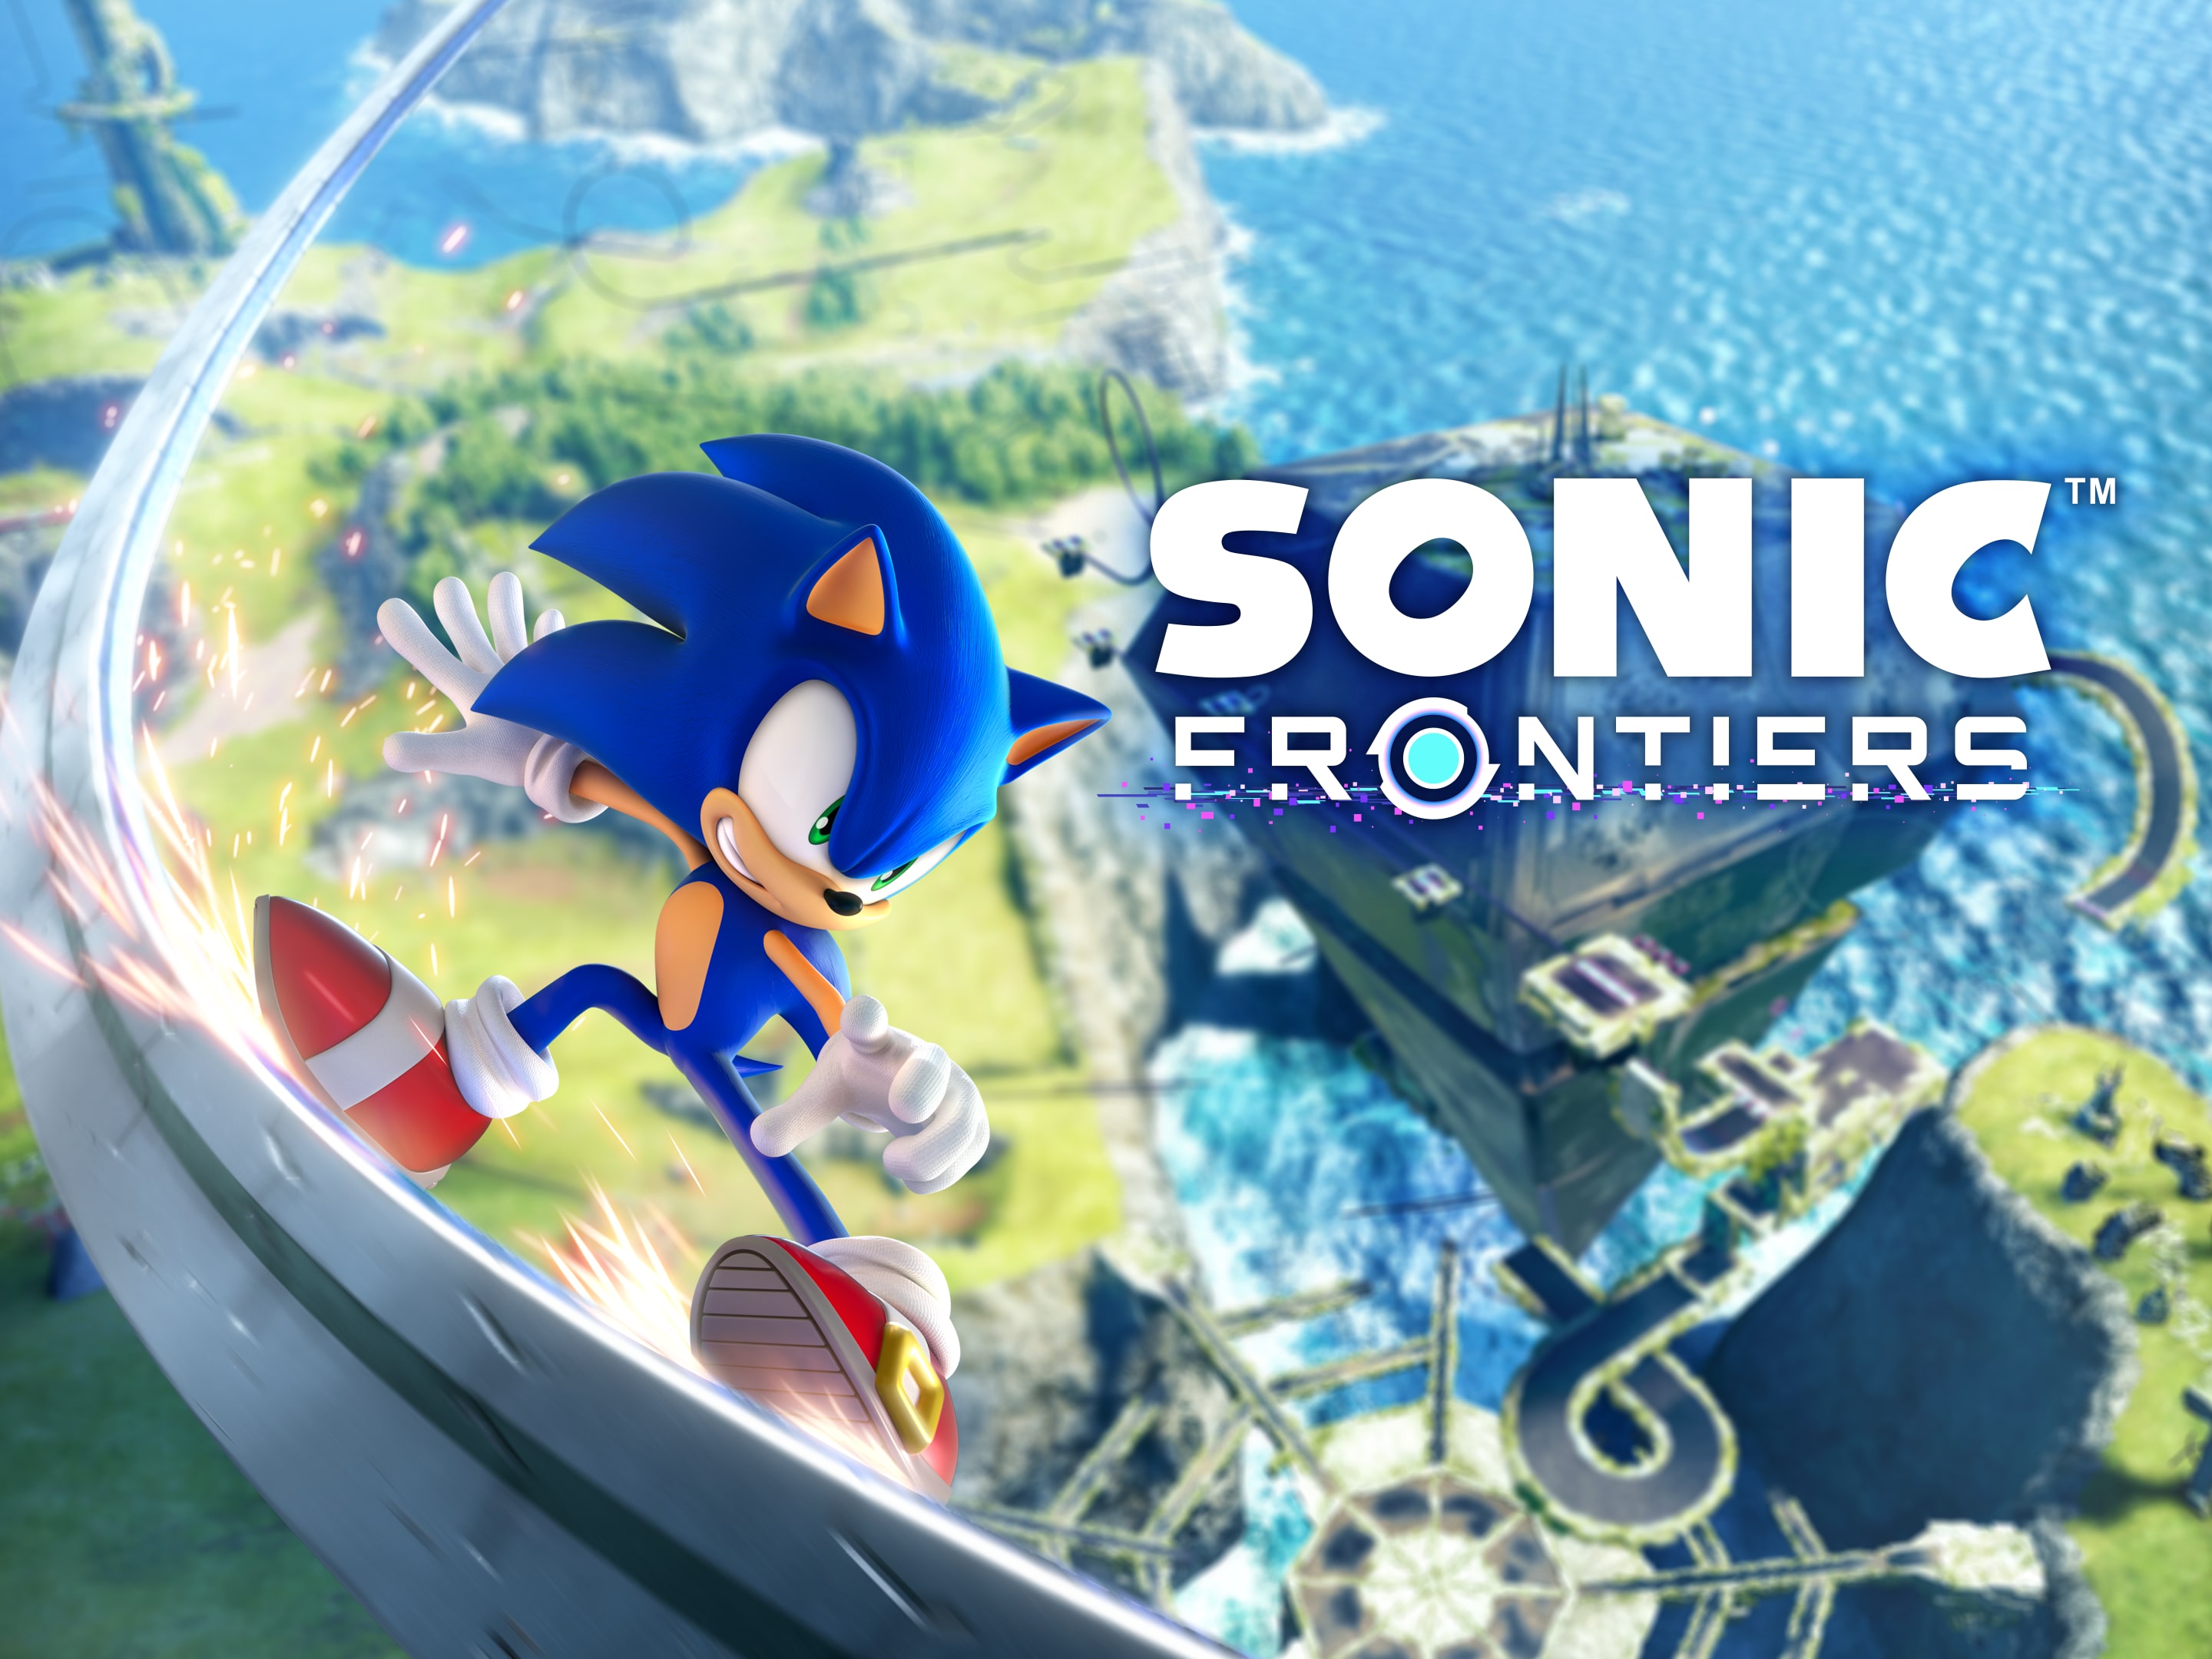 Sonic Frontiers – Jogos para PS4 e PS5